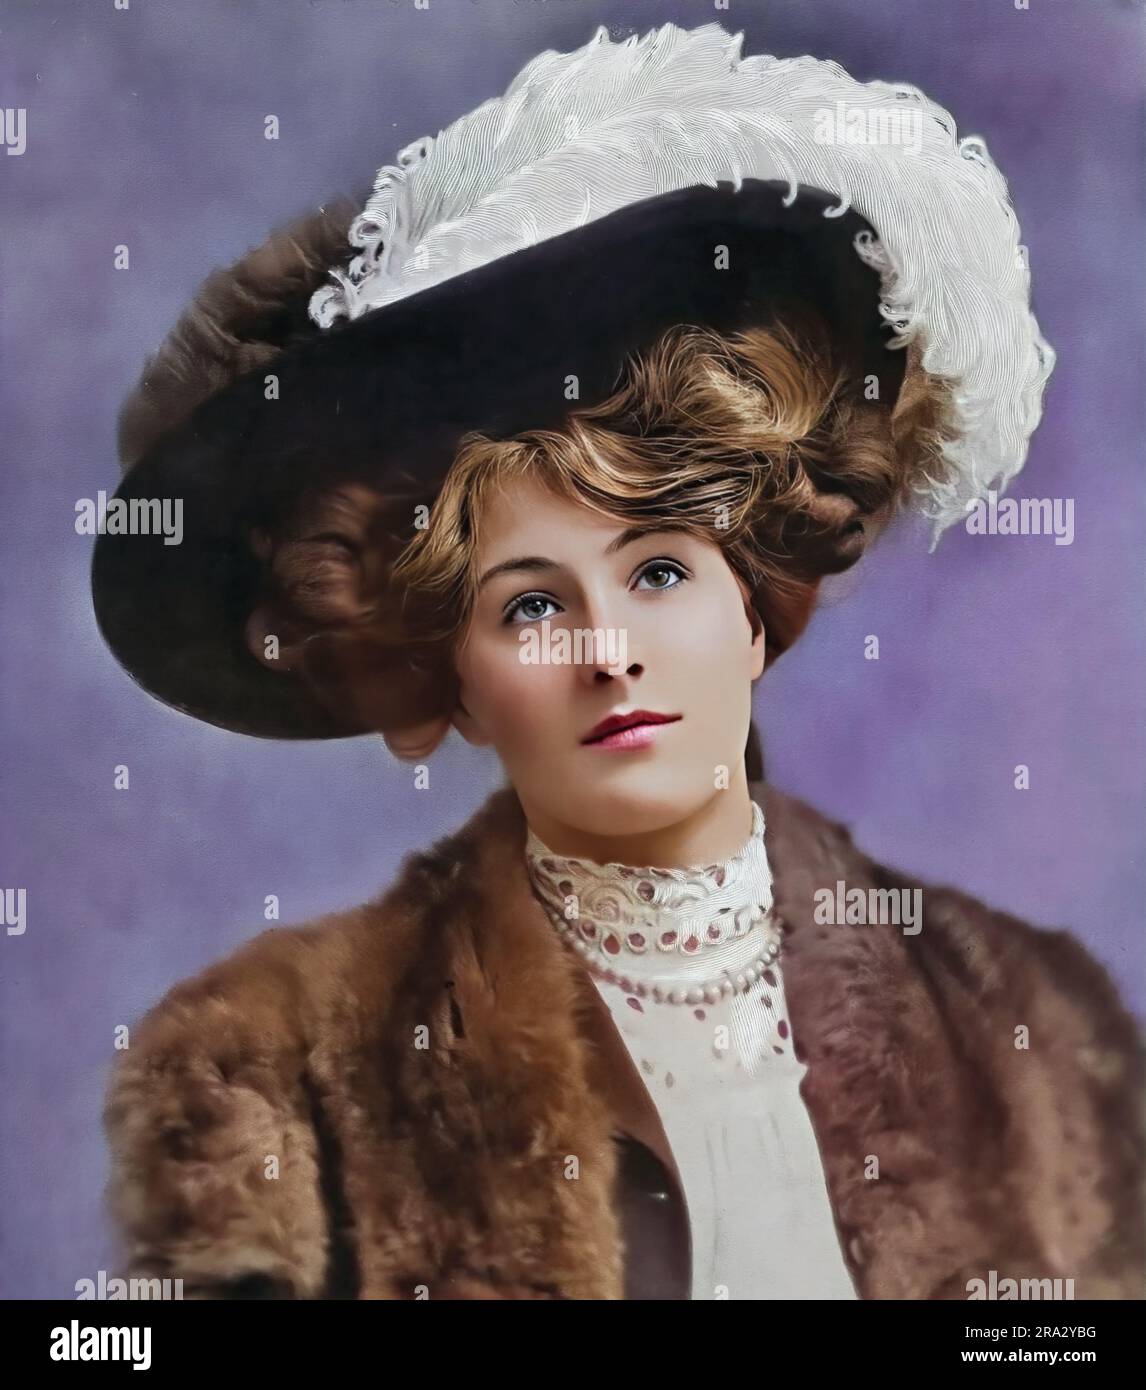 Porträt von Edna Loftus (ca. 1895 - 1916), einer frühen britischen Theaterschauspielerin, der ersten Frau von Jockey Winnie O'Connor. Stockfoto